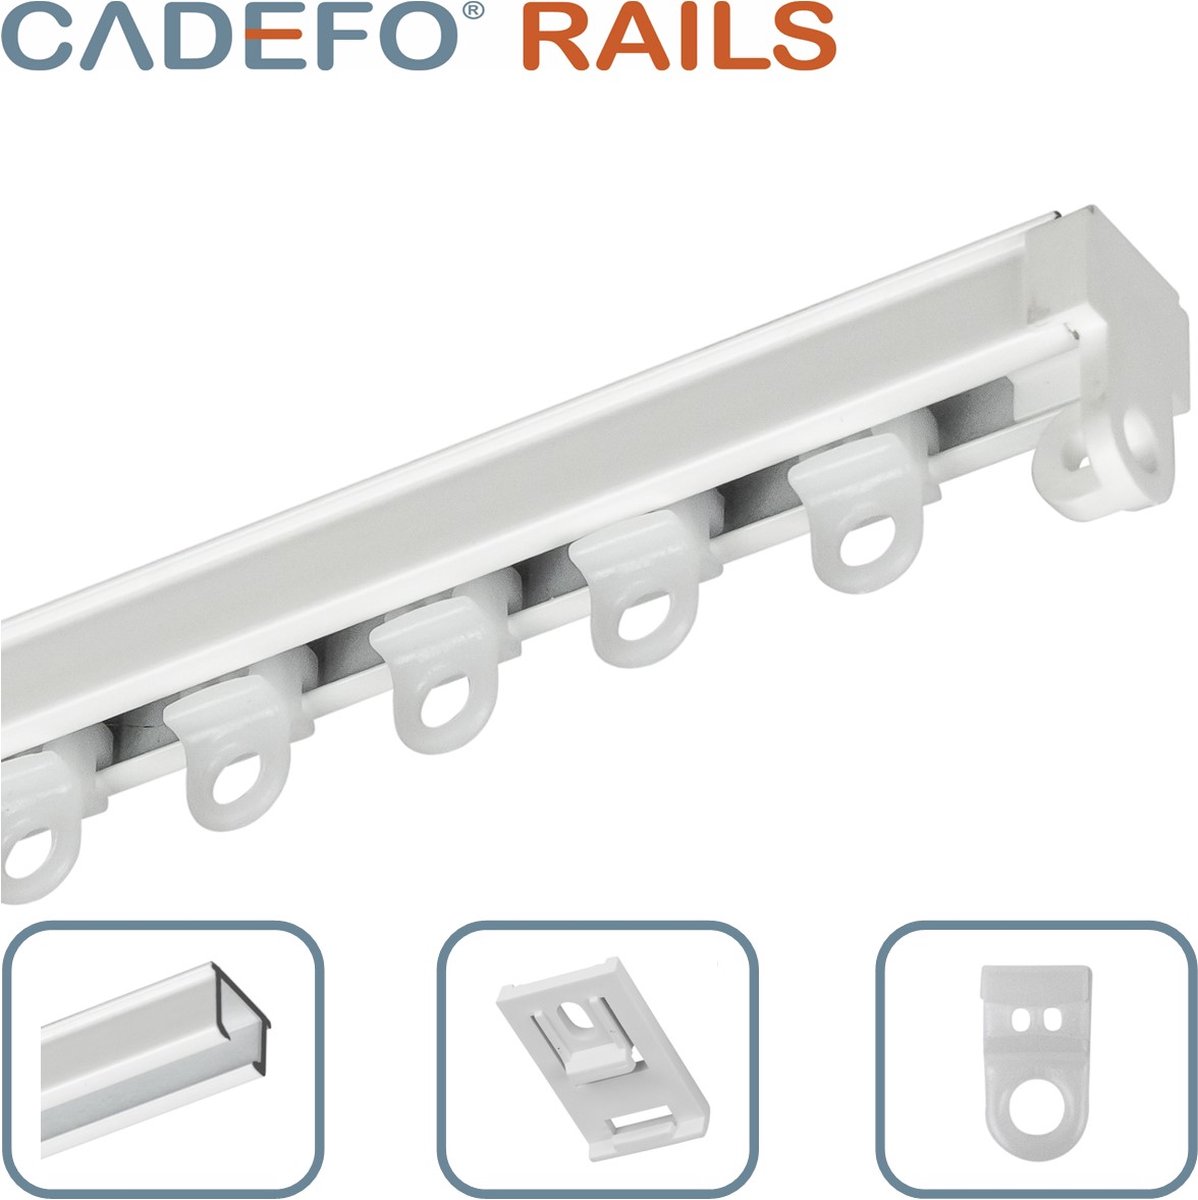 CADEFO RAILS (151 - 200 cm) Gordijnrails - Compleet op maat! - UIT 1 STUK - Leverbaar tot 6 meter - Plafondbevestiging - Lengte 188 cm